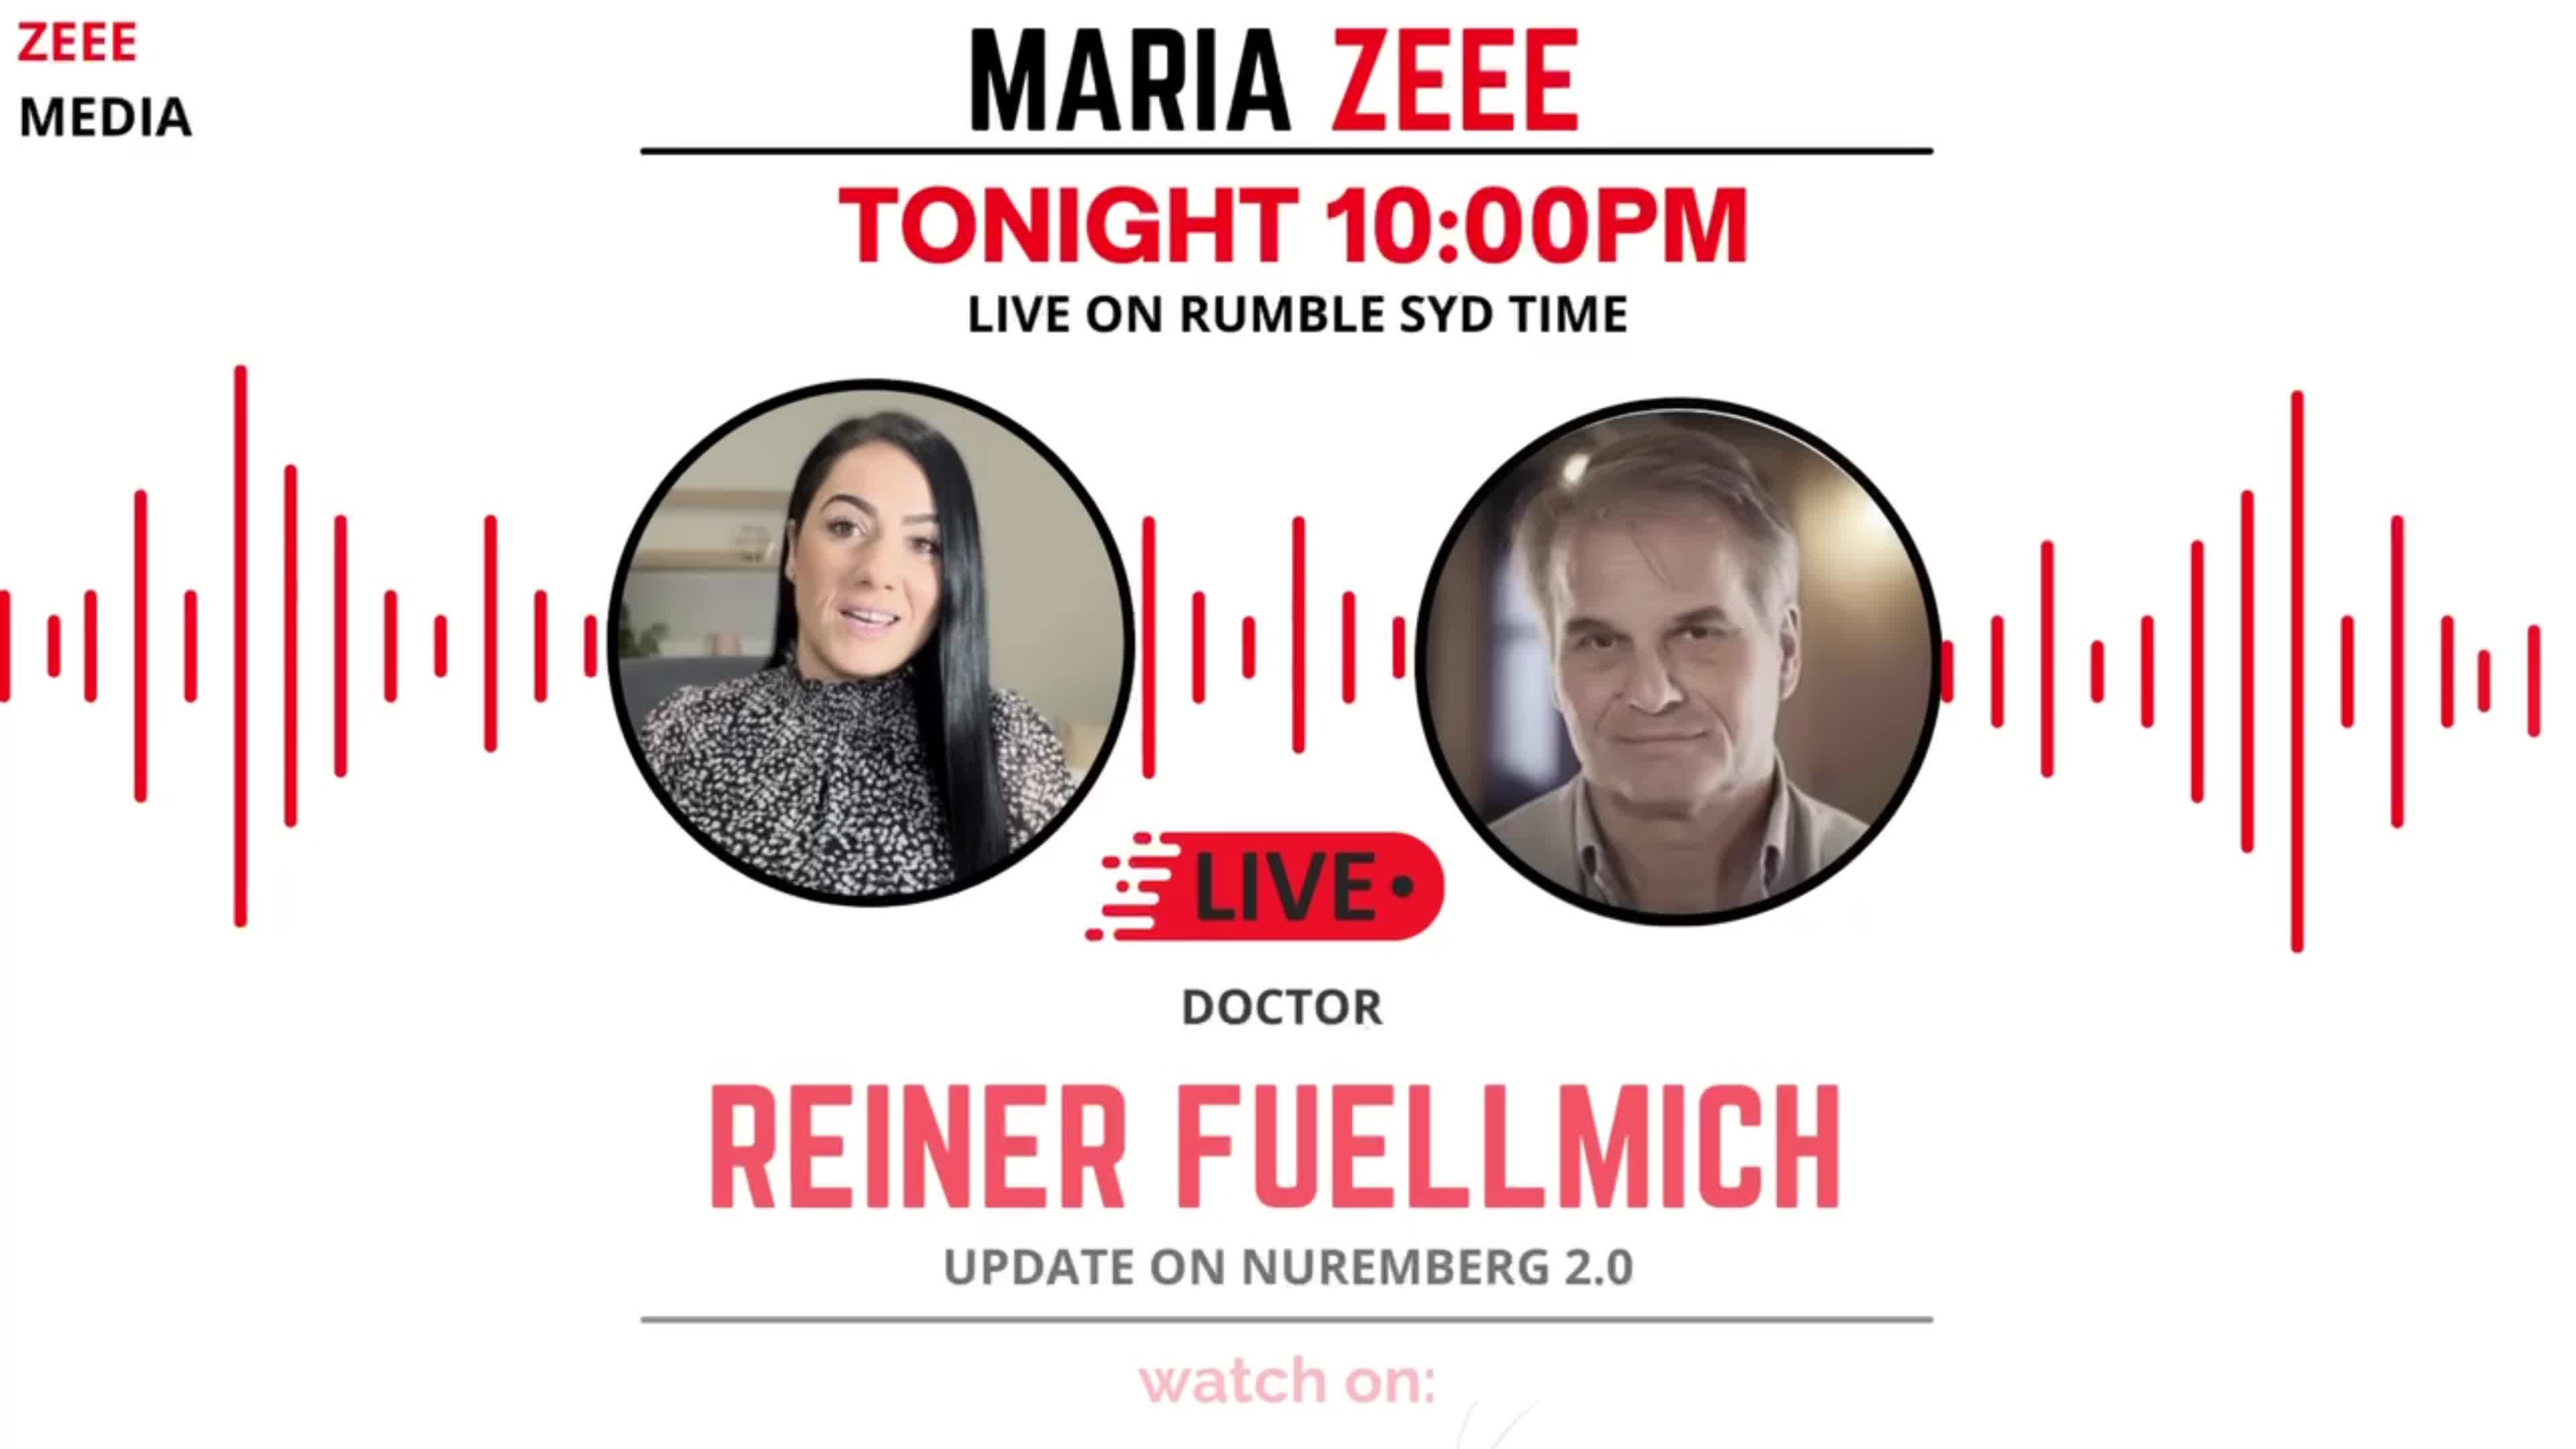 Dr. Reiner Fuellmich - Update on Nuremberg 2.0